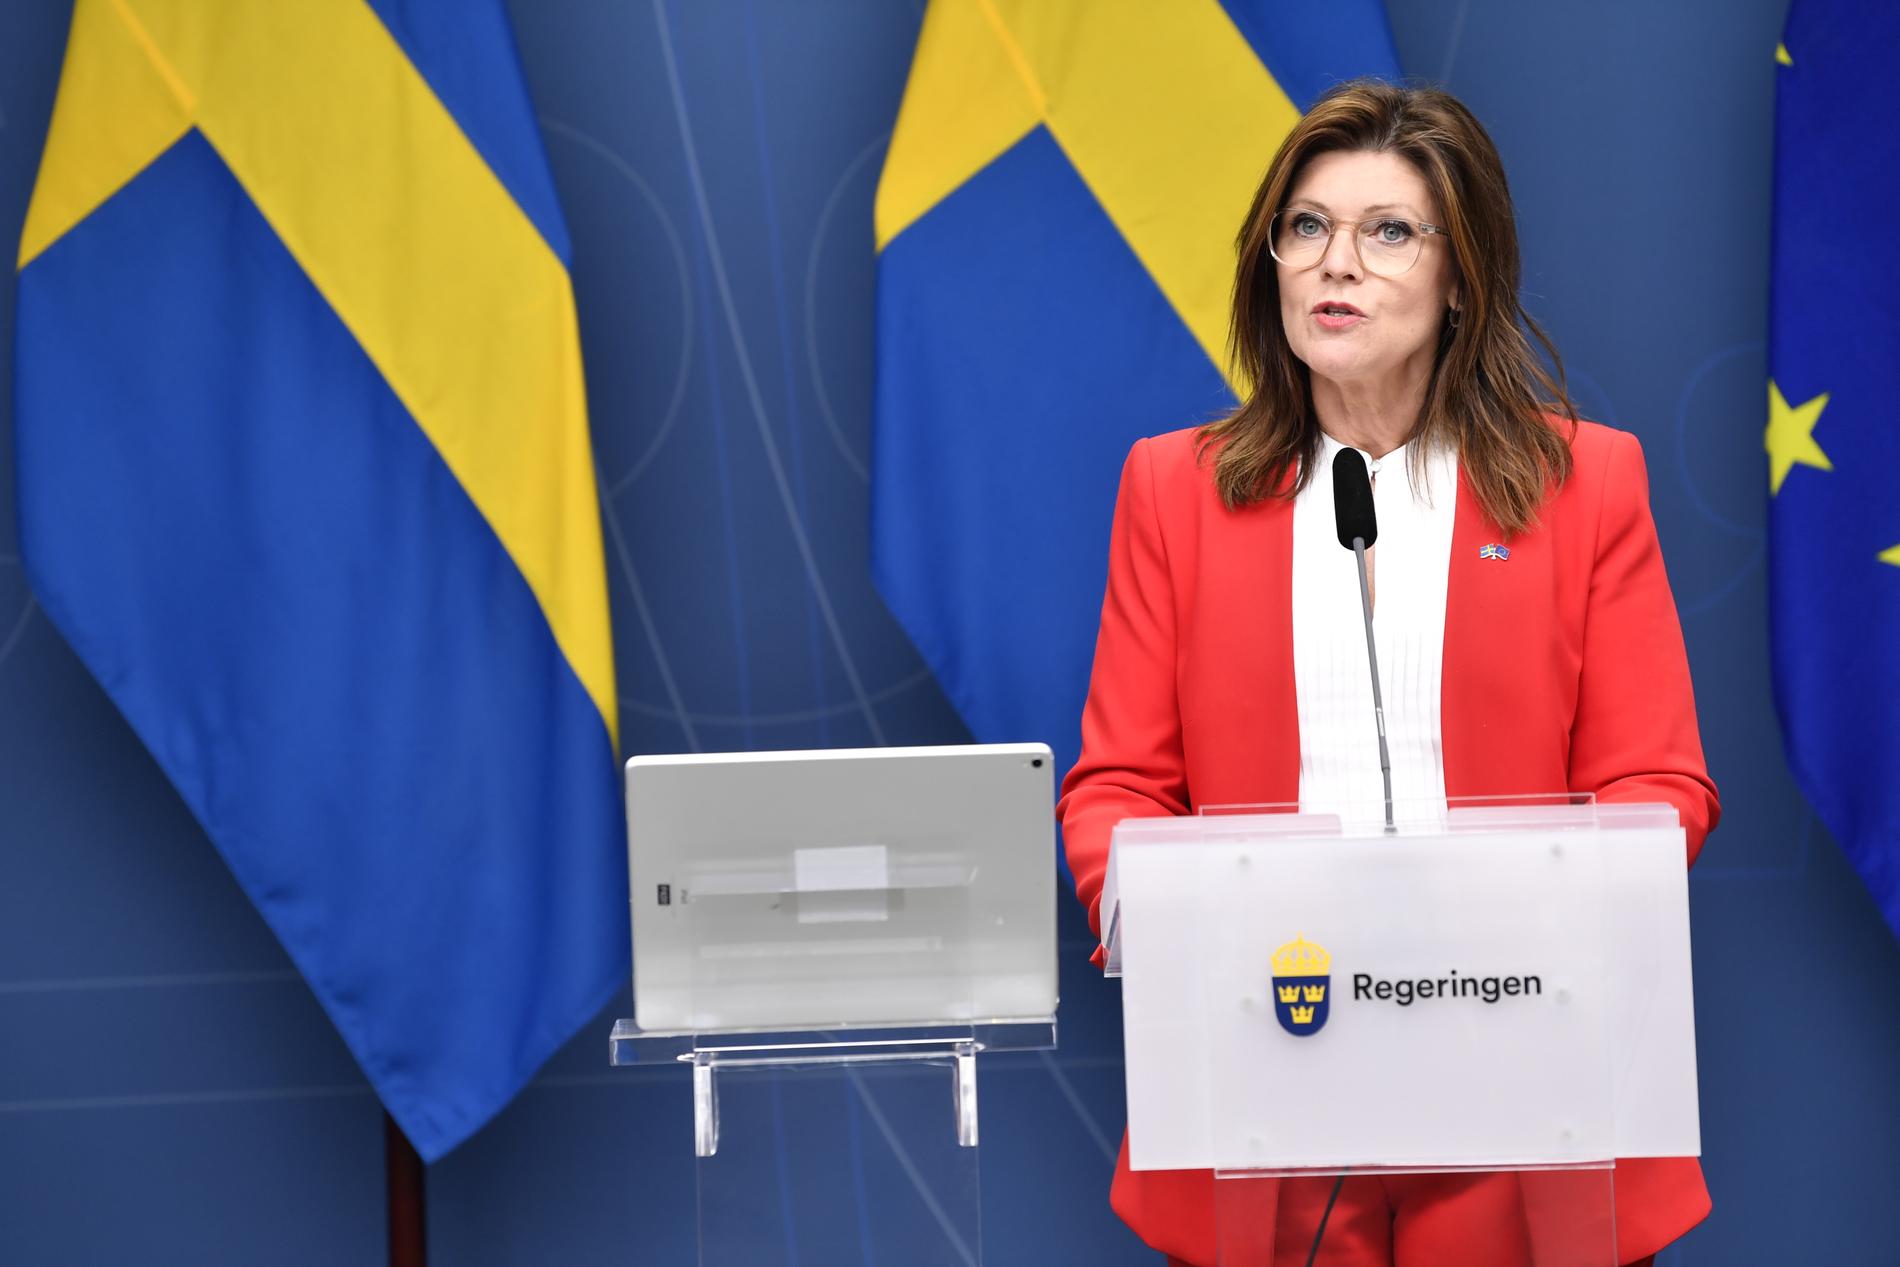 Arbetsmarknadsminister Eva Nordmark under pressträffen.